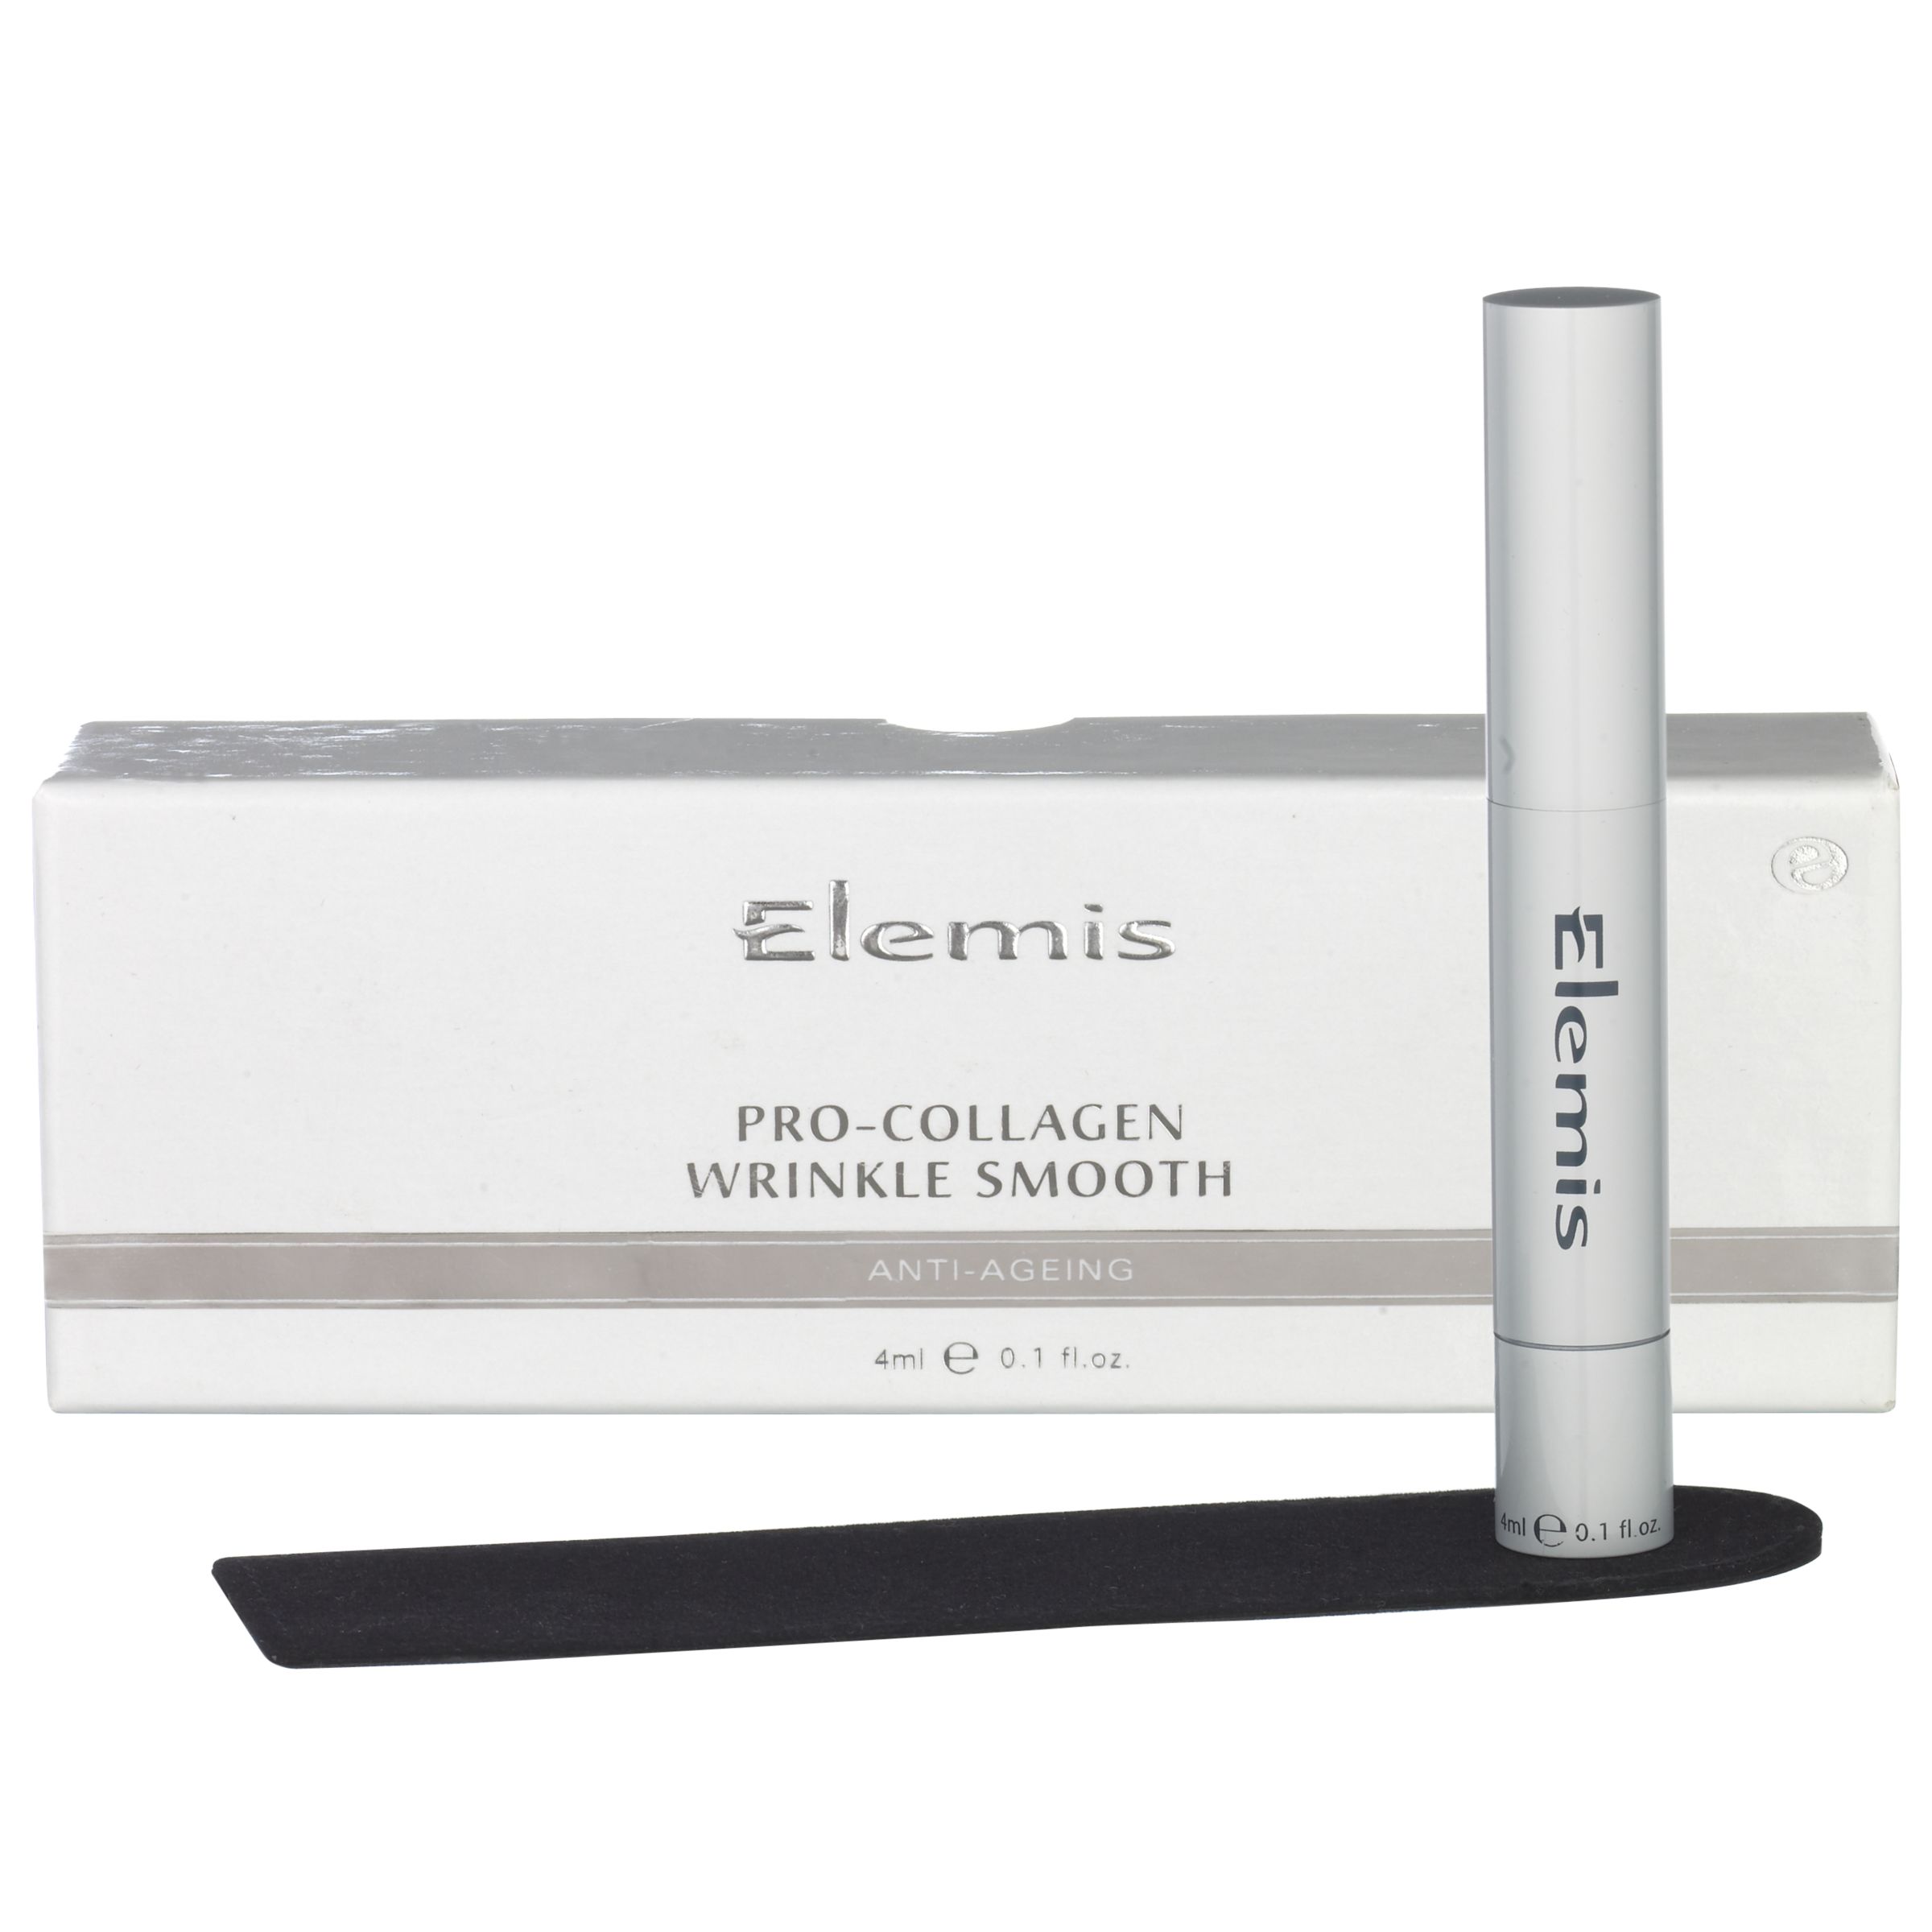 Elemis Pro-Collagen Wrinkle Smooth, 15ml at John Lewis